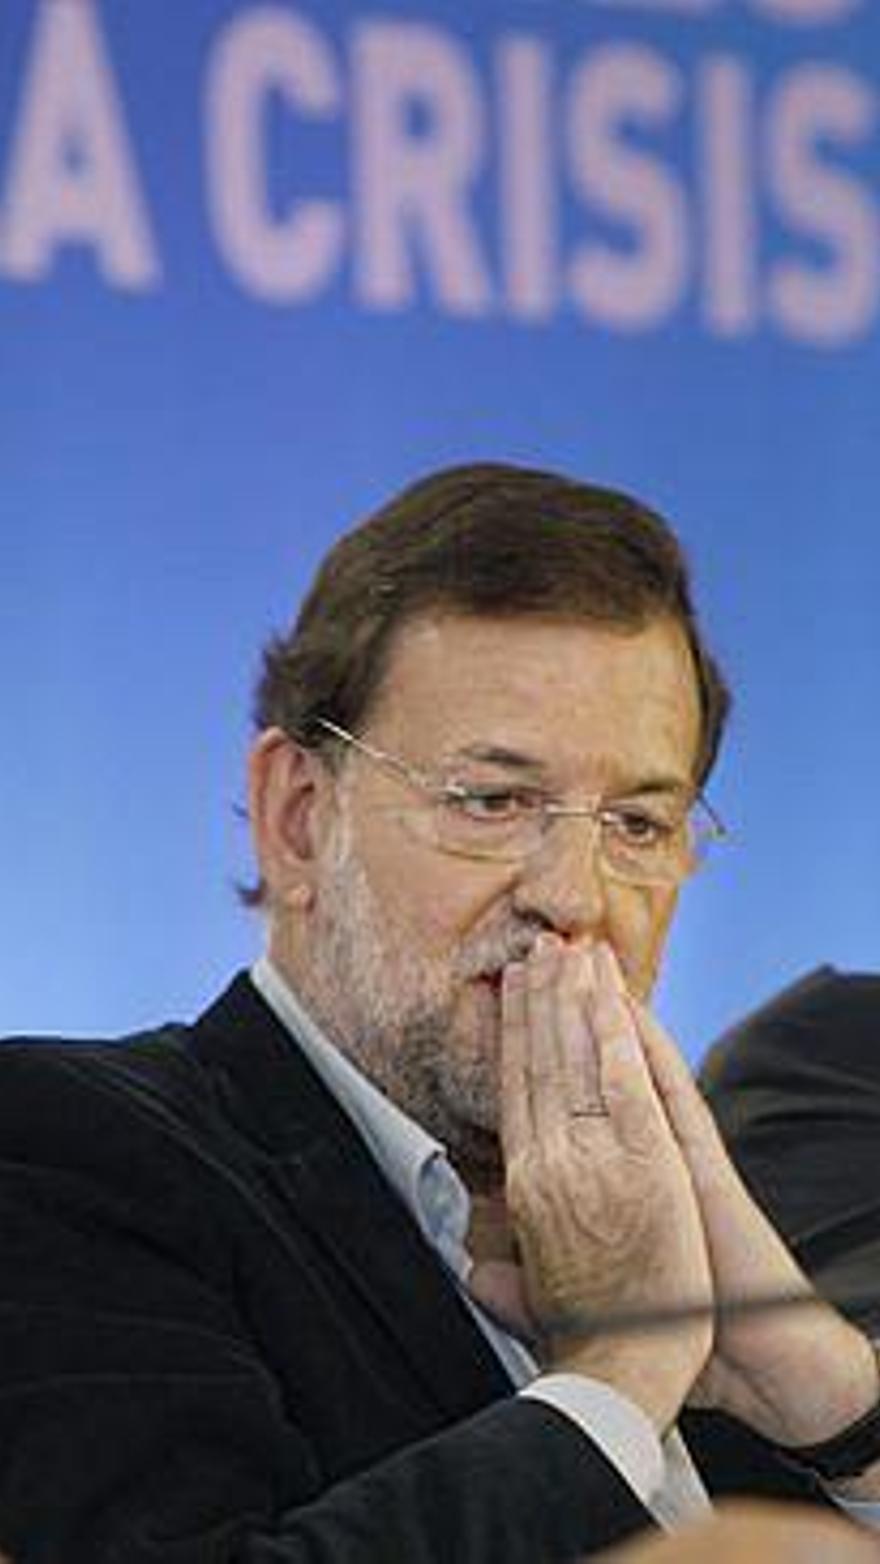 Rajoy olvida cerrar un micrófono y exclama: "mañana tengo el coñazo del  desfile" - Levante-EMV